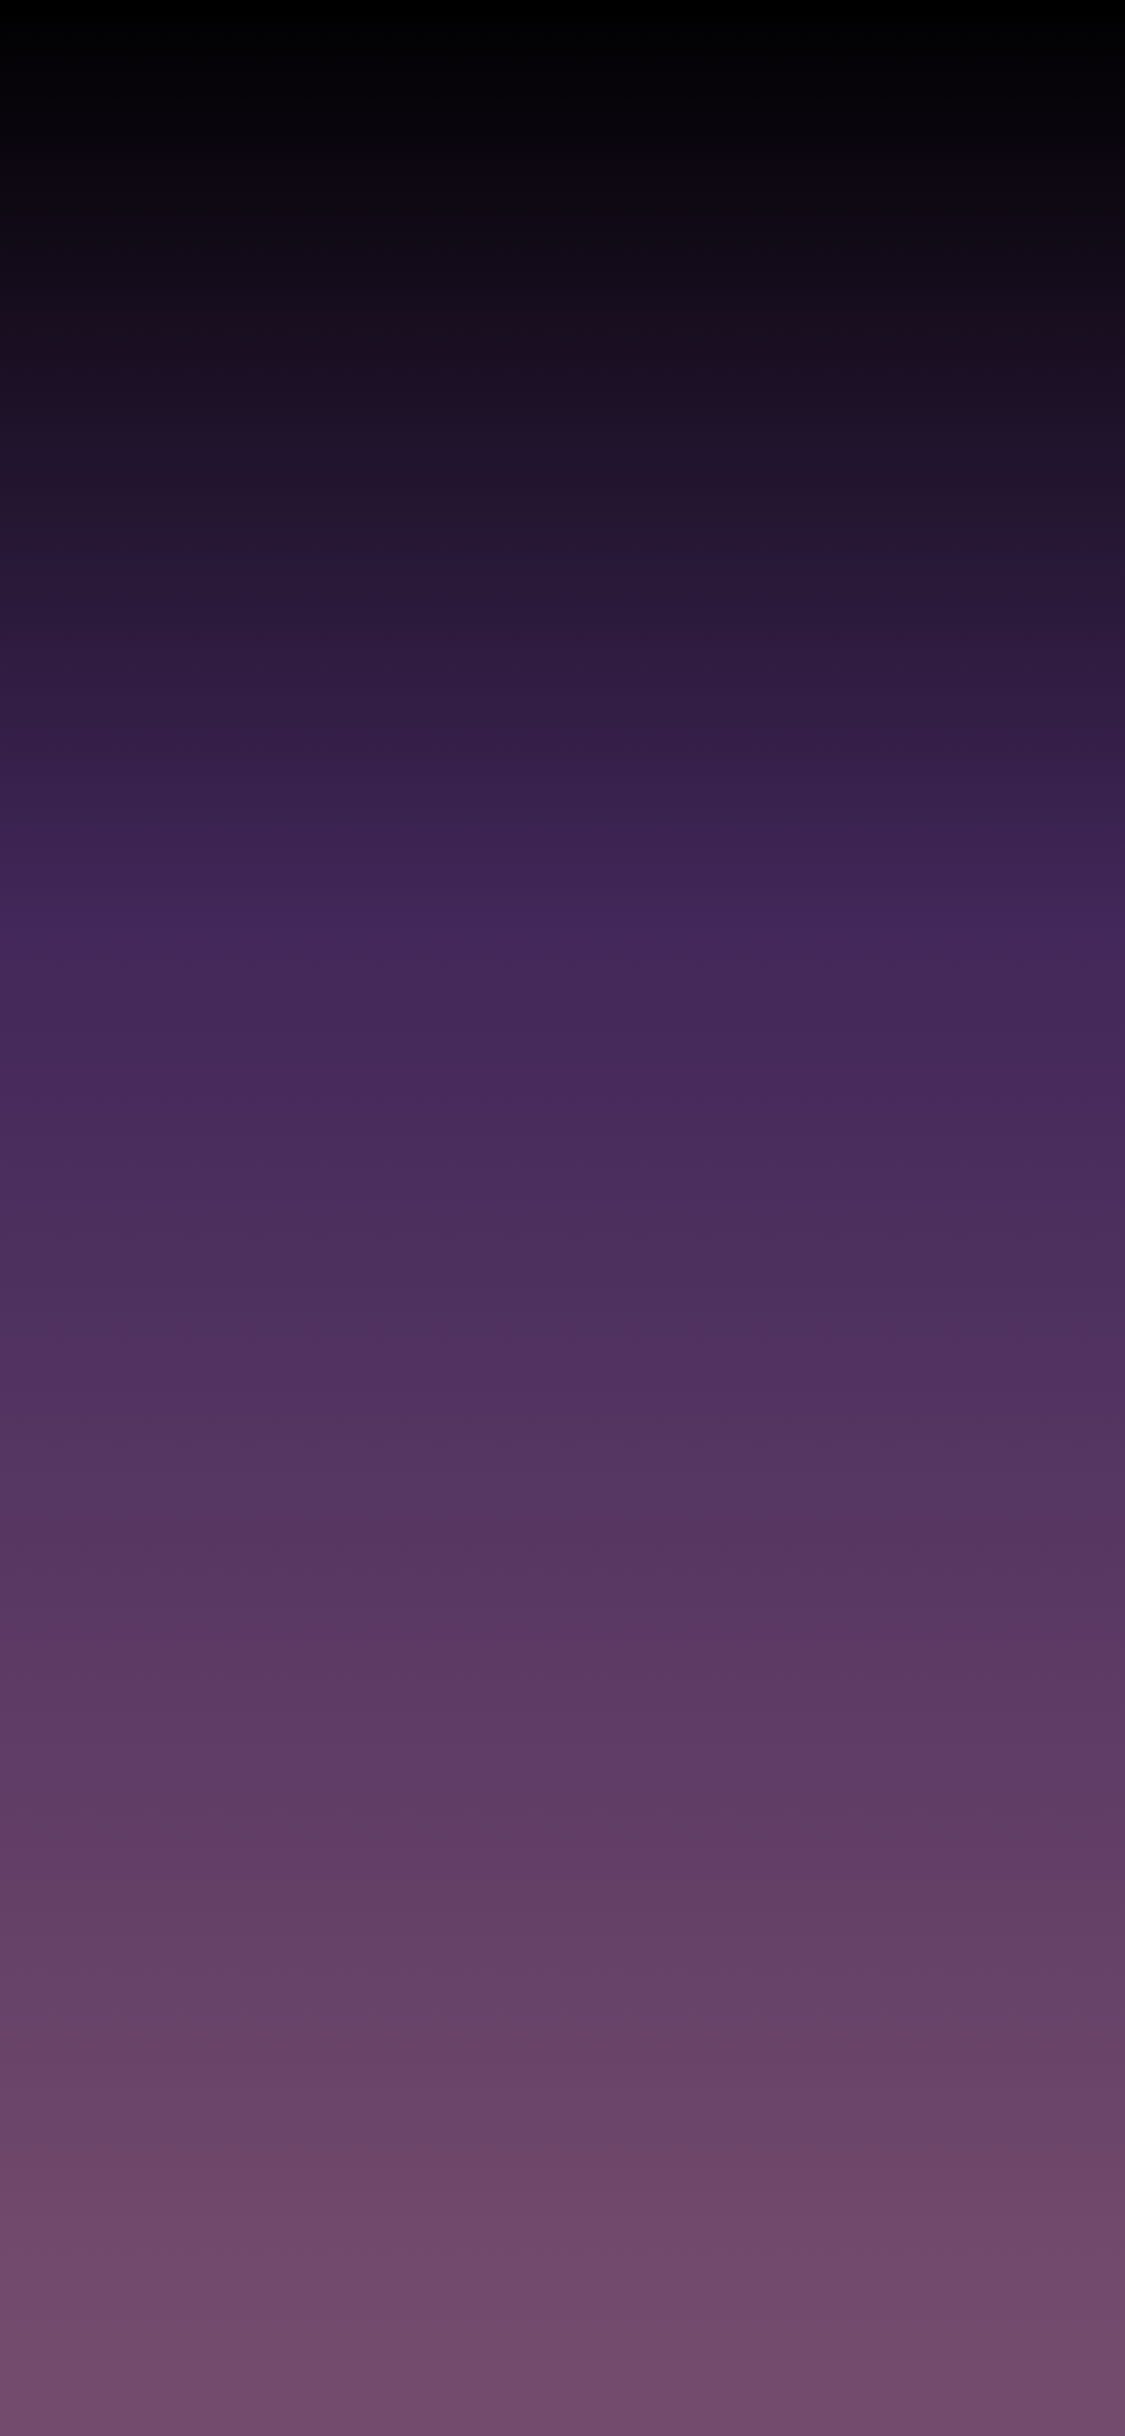 Bảo đảm bạn sẽ thích ngay những hình nền đa sắc không được nhiều người biết đến từ bộ sưu tập Dark Purple Gradient Wallpapers. Sự chuyển tiếp dần dần từ màu tím đen đậm đến màu trắng tinh khiết tạo nên một sự ấn tượng đặc biệt trên màn hình iPhone của bạn. 